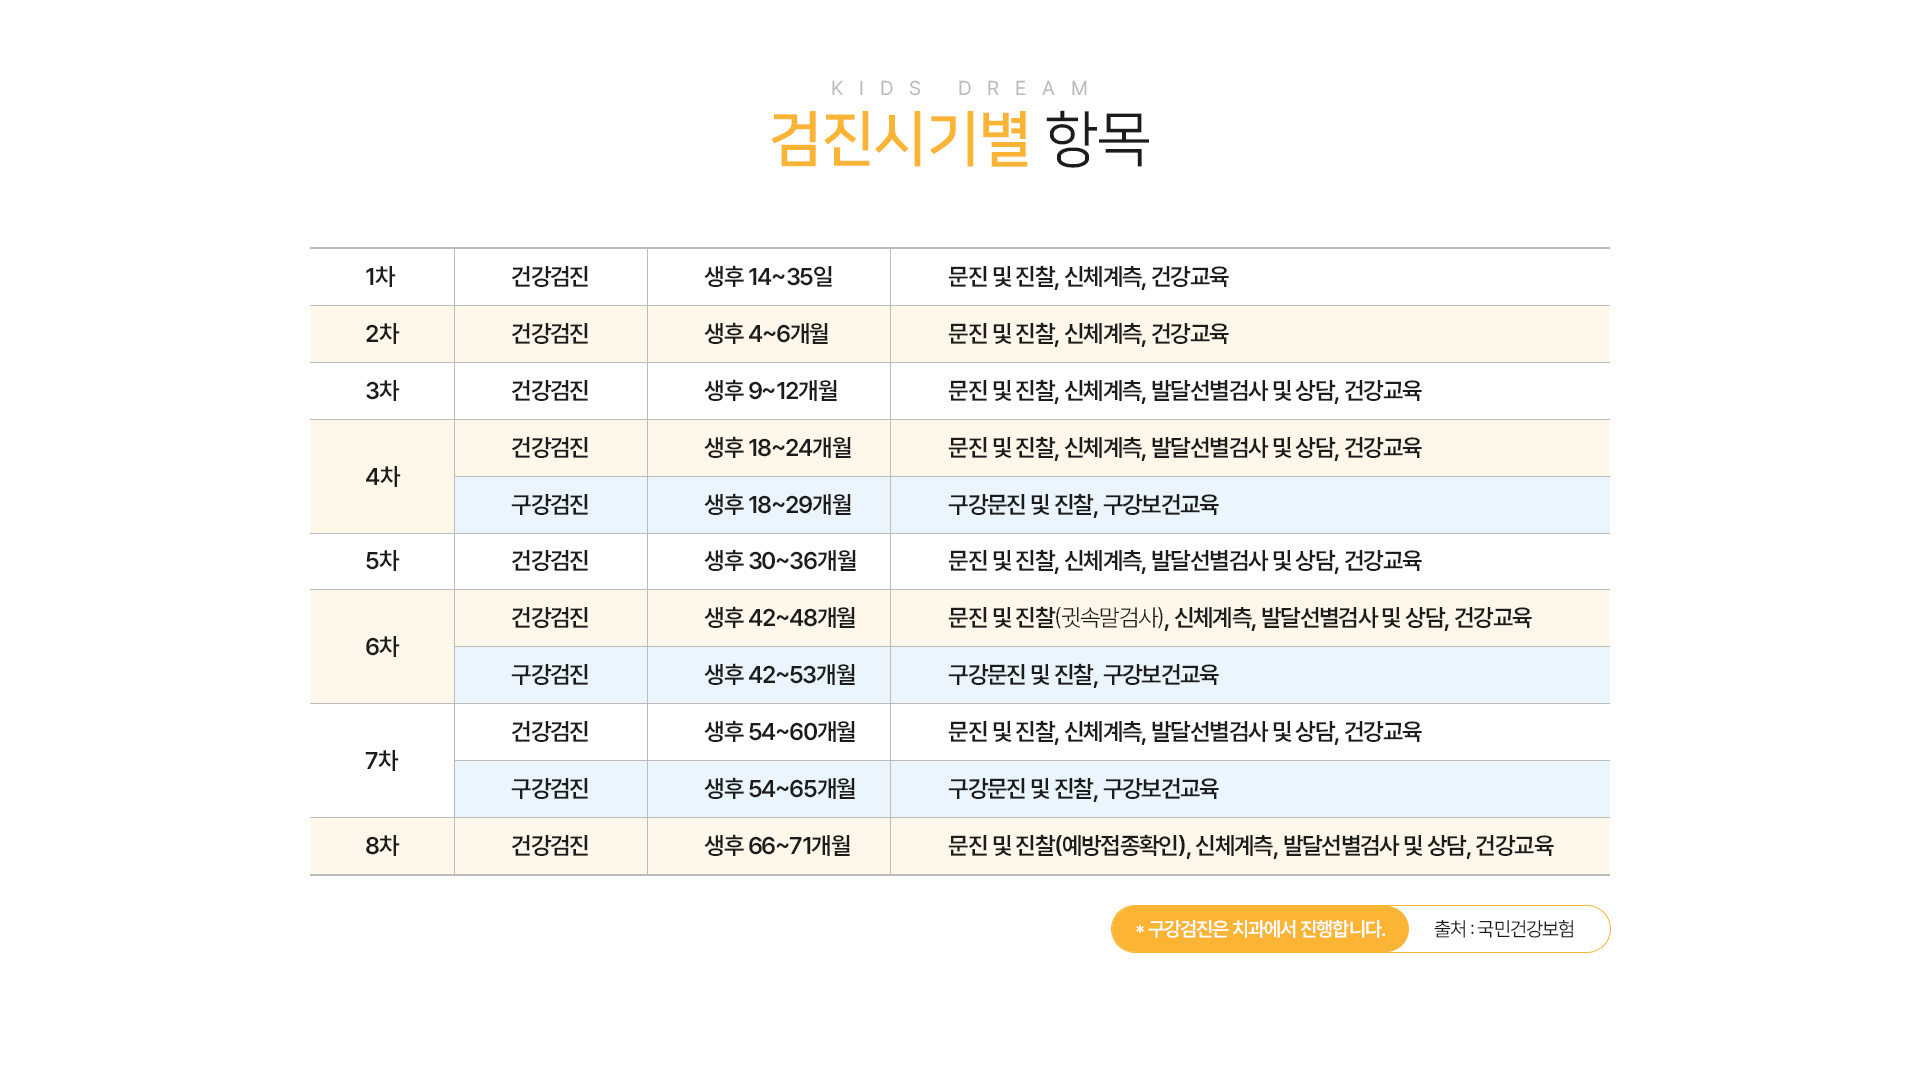 영유아검진 검진시기별 항목